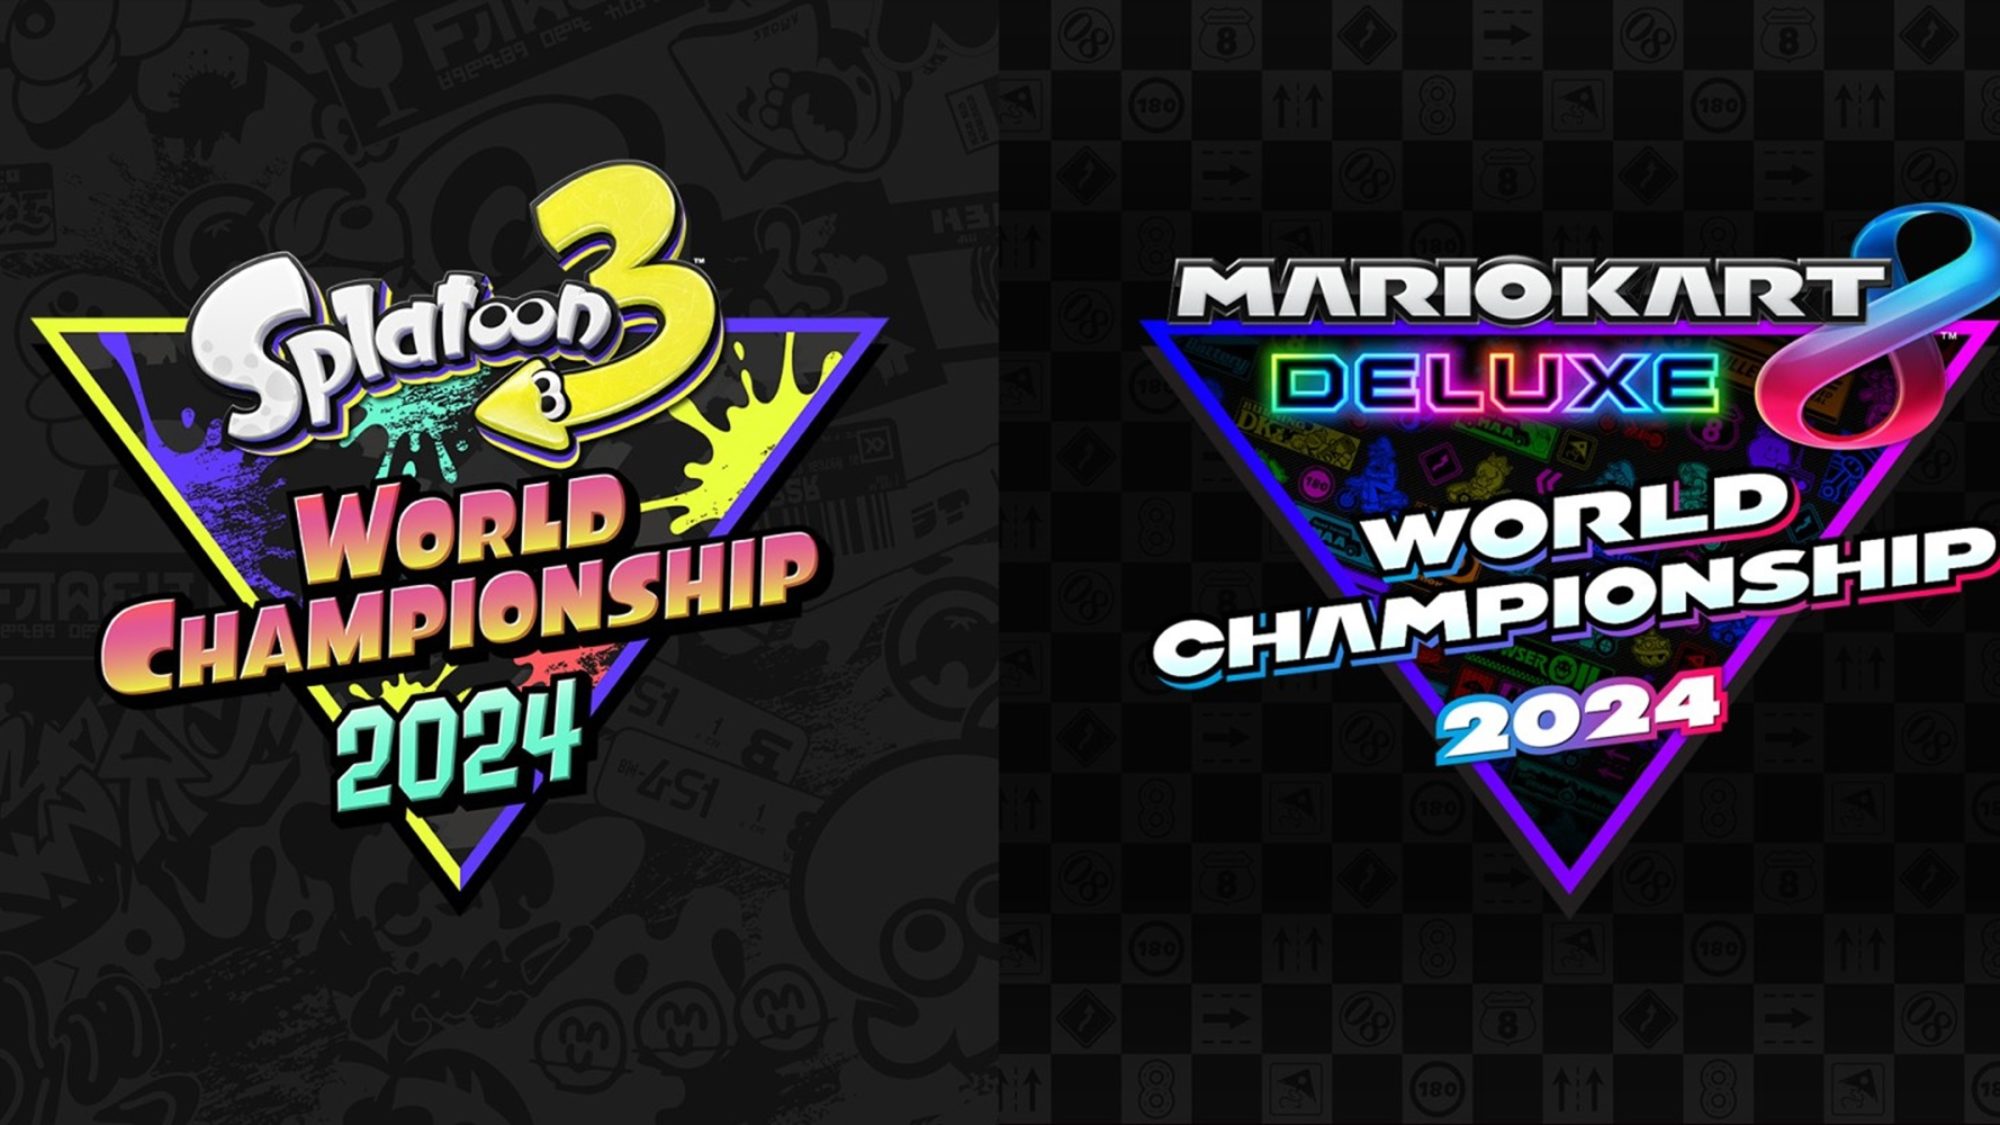 Splatoon 3 & Mario Kart 8 Deluxe World Championships Are Set